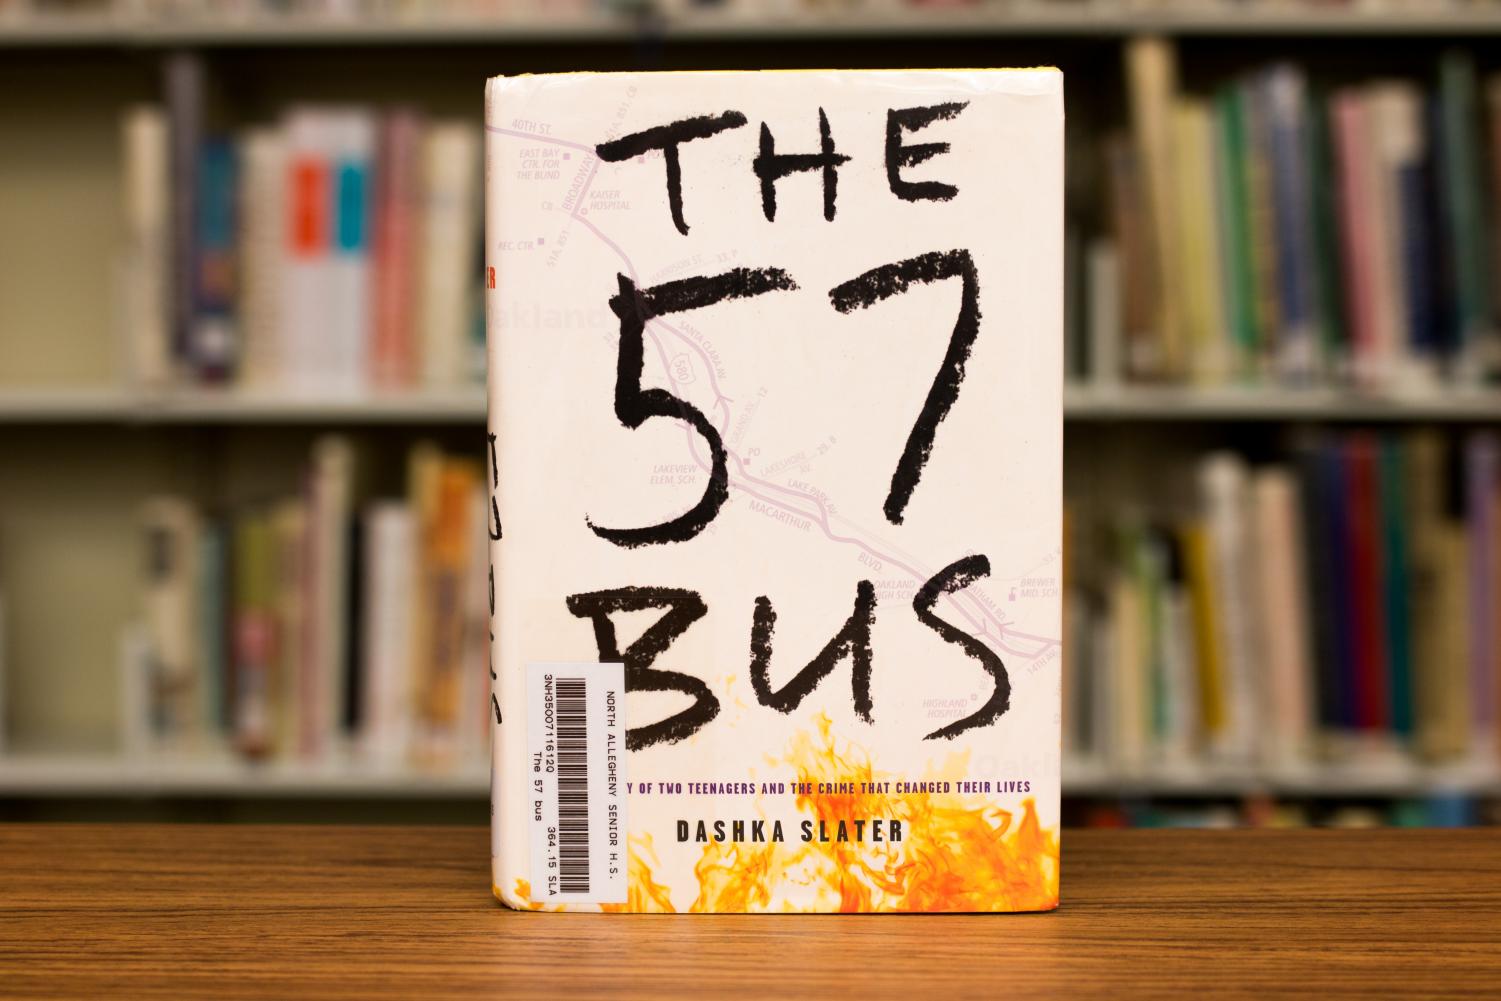 57 Bus 